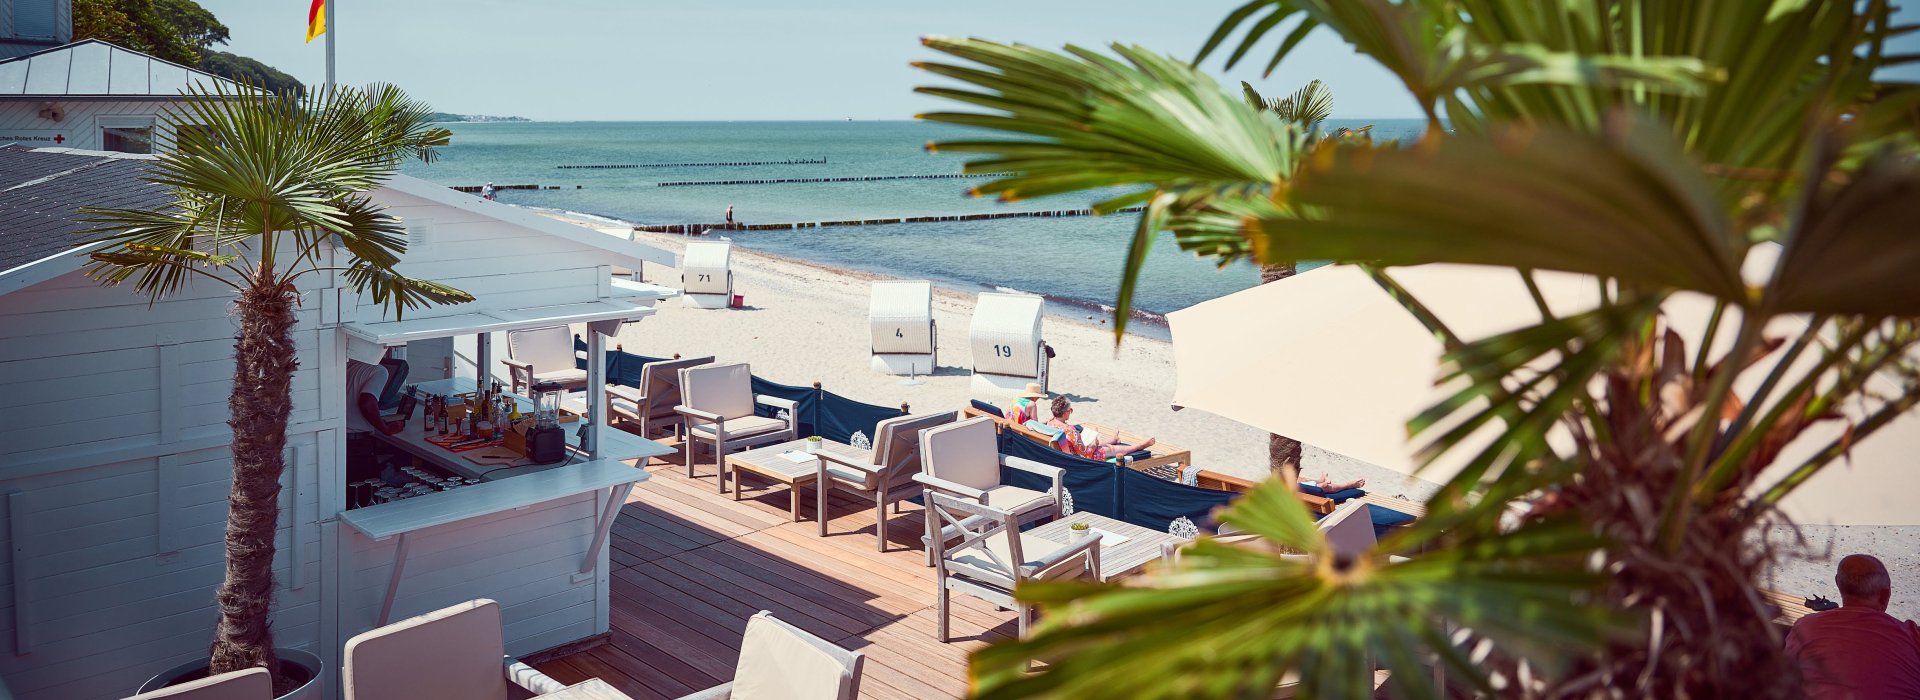 Grandhotel Heiligendamm - Beach Club